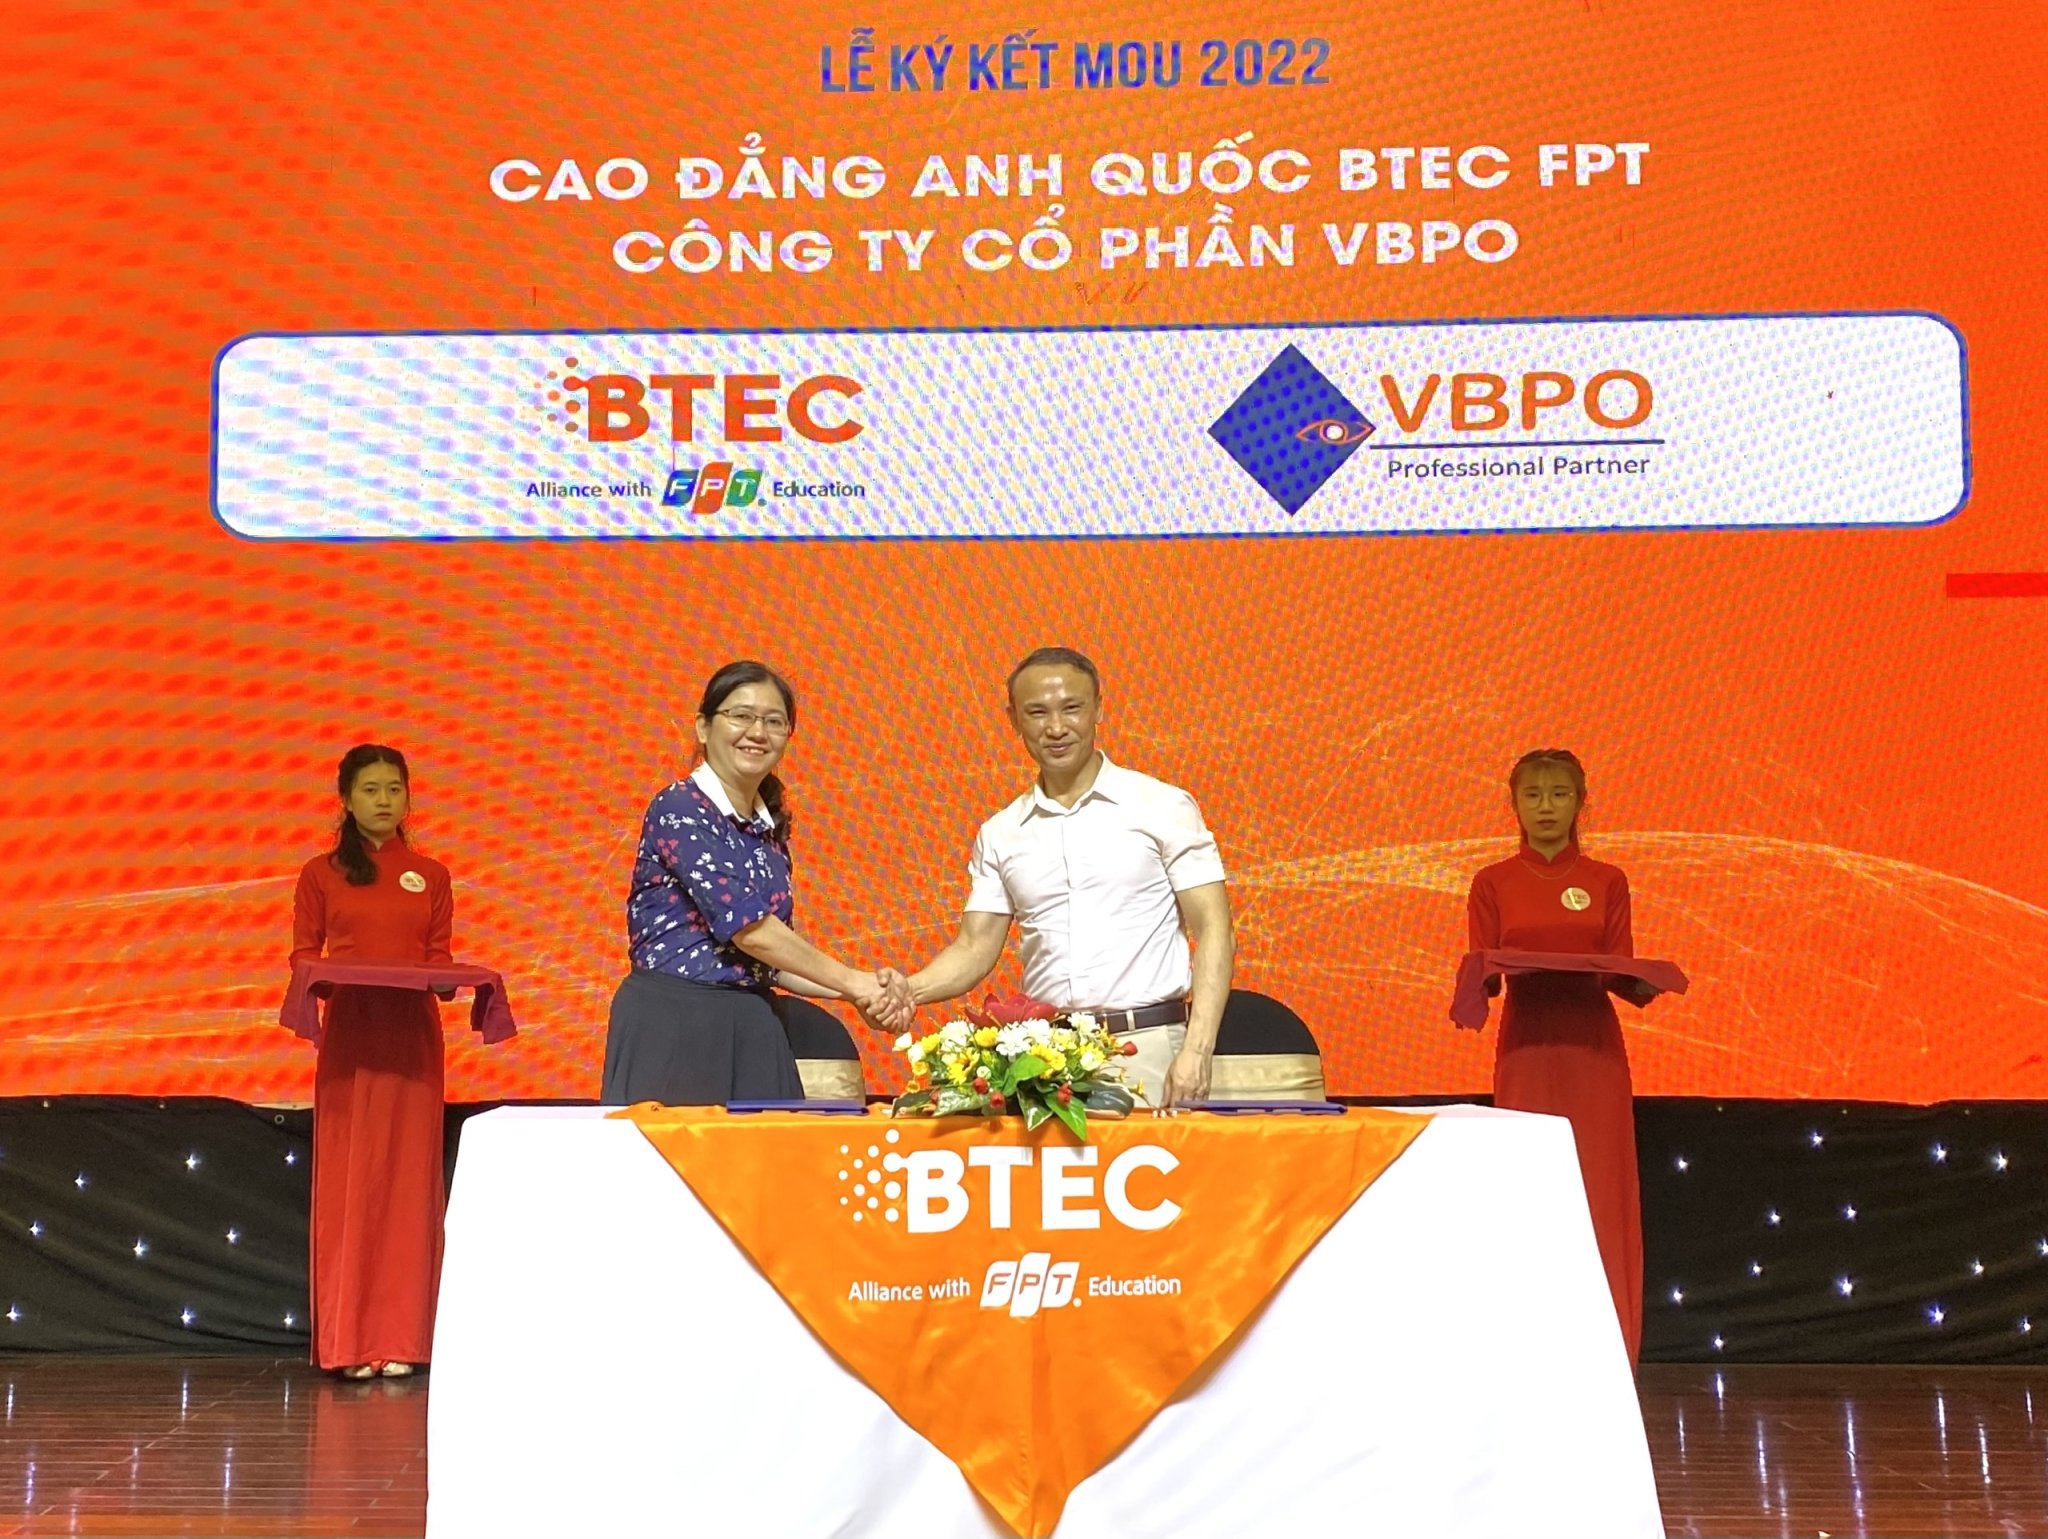 Chị Trần Thị Tuyết Vân – Trưởng Bộ phận Nhân sự Công ty Cổ phần V.B.P.O thực hiện ký kết